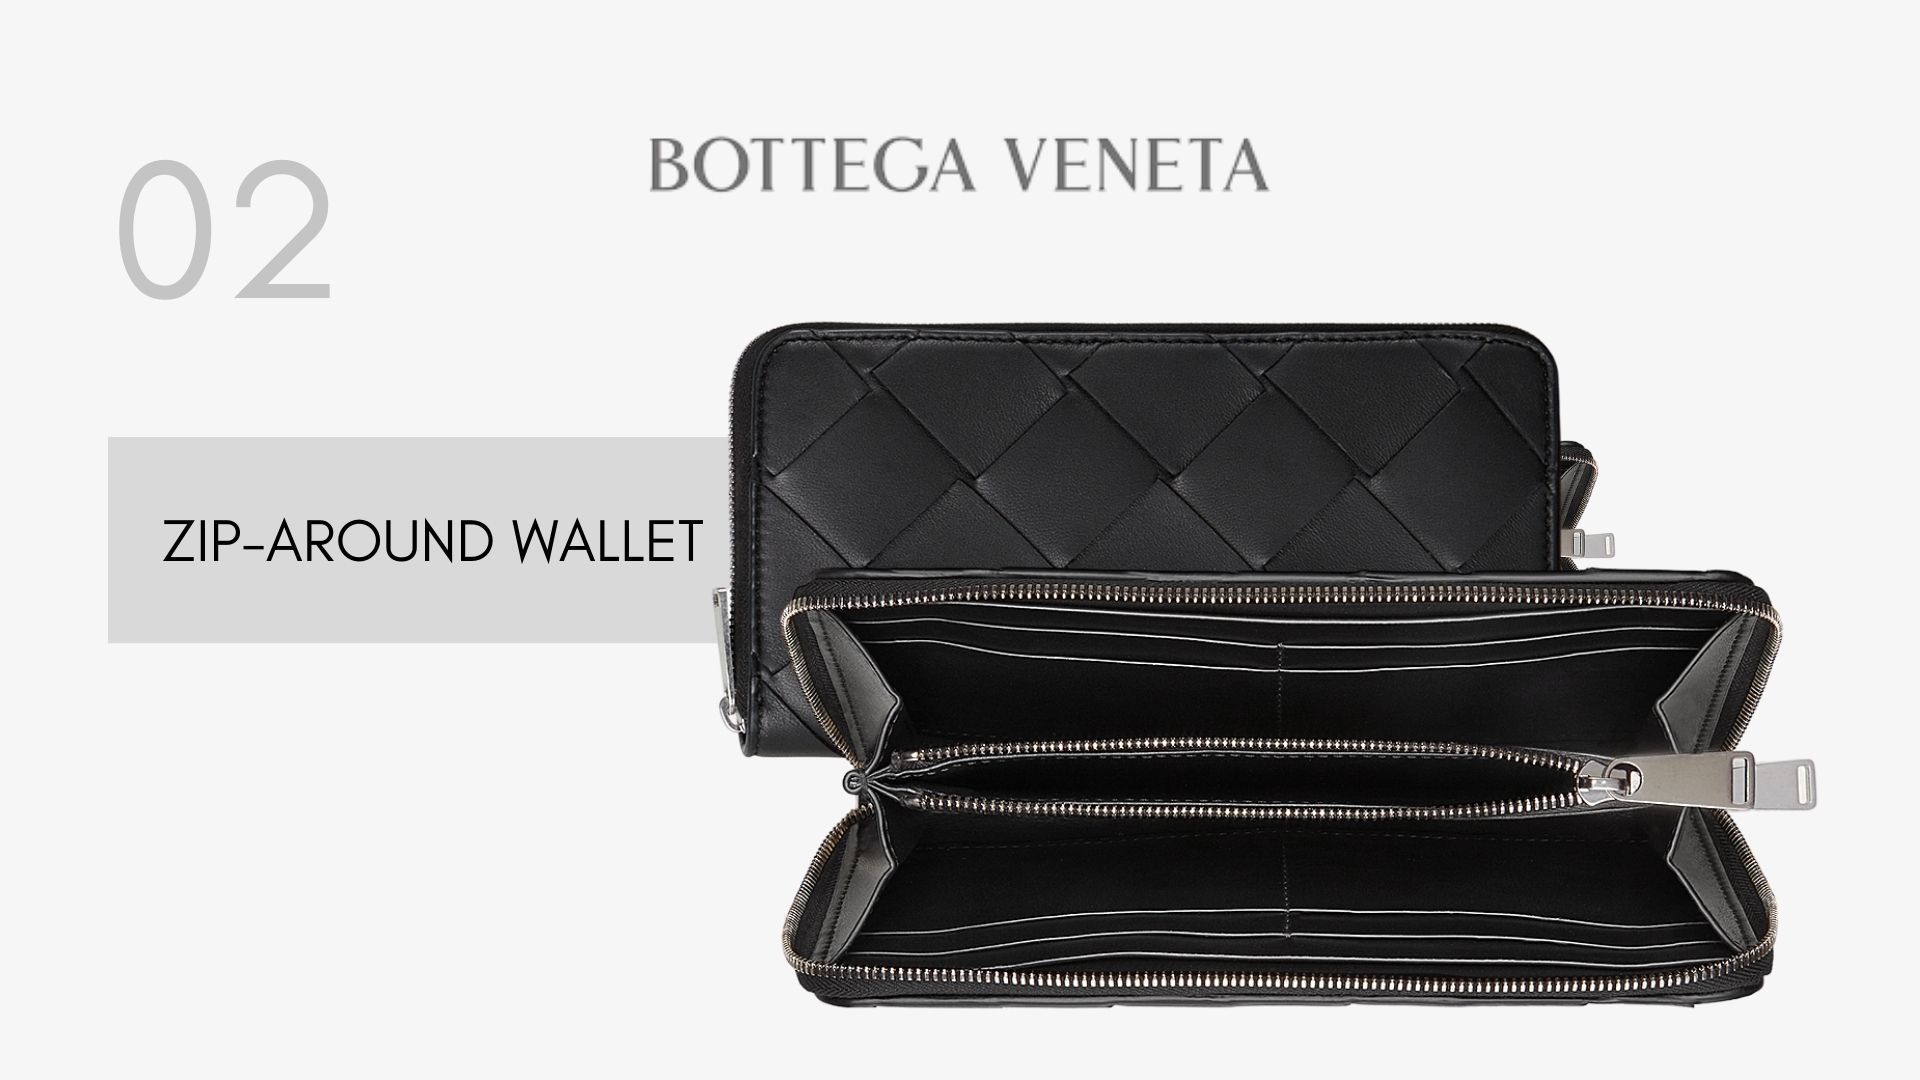 รวมกระเป๋าตังค์ Bottega Veneta รุ่นฮิตในปี 2020 ZIP-AROUND WALLET